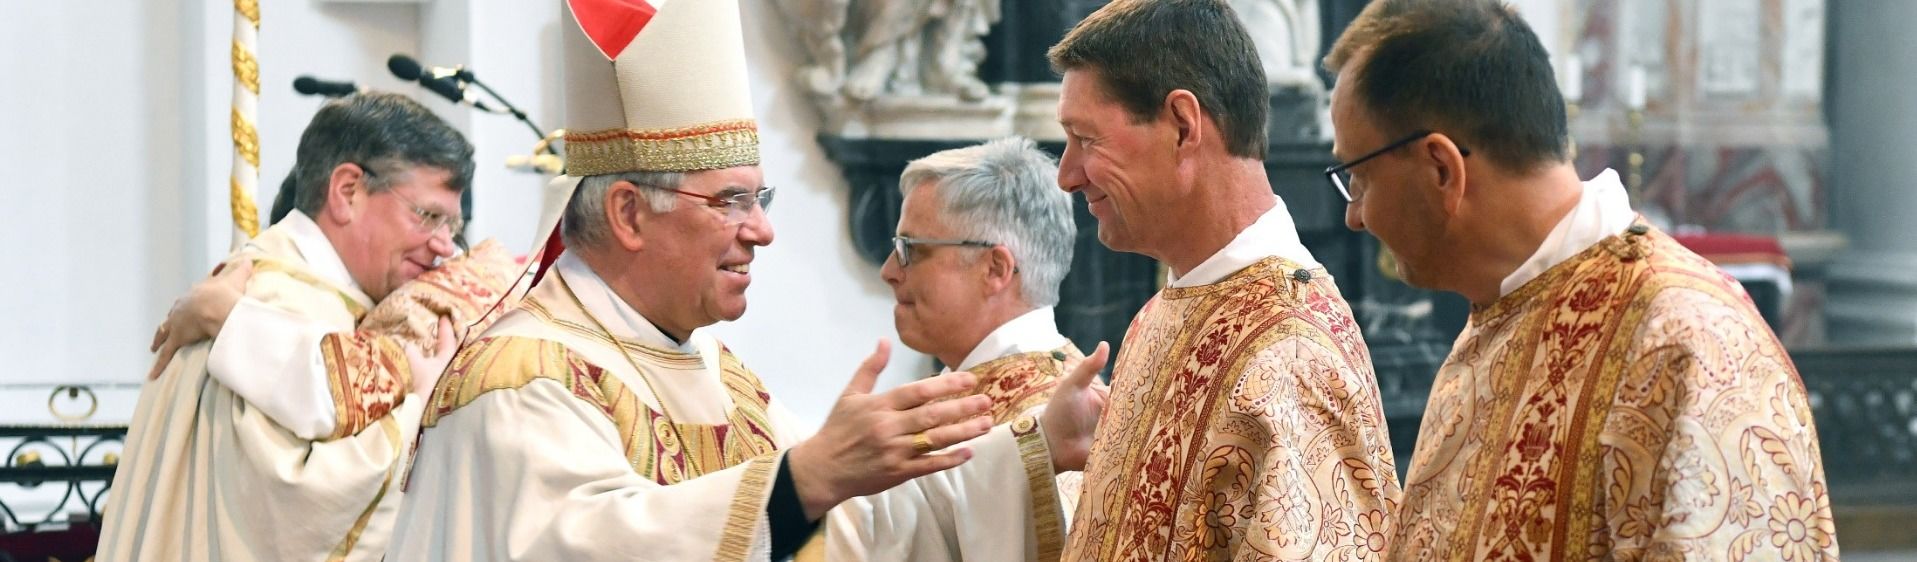 Weihbischof Diez weihte vier Diakone im Fuldaer Dom